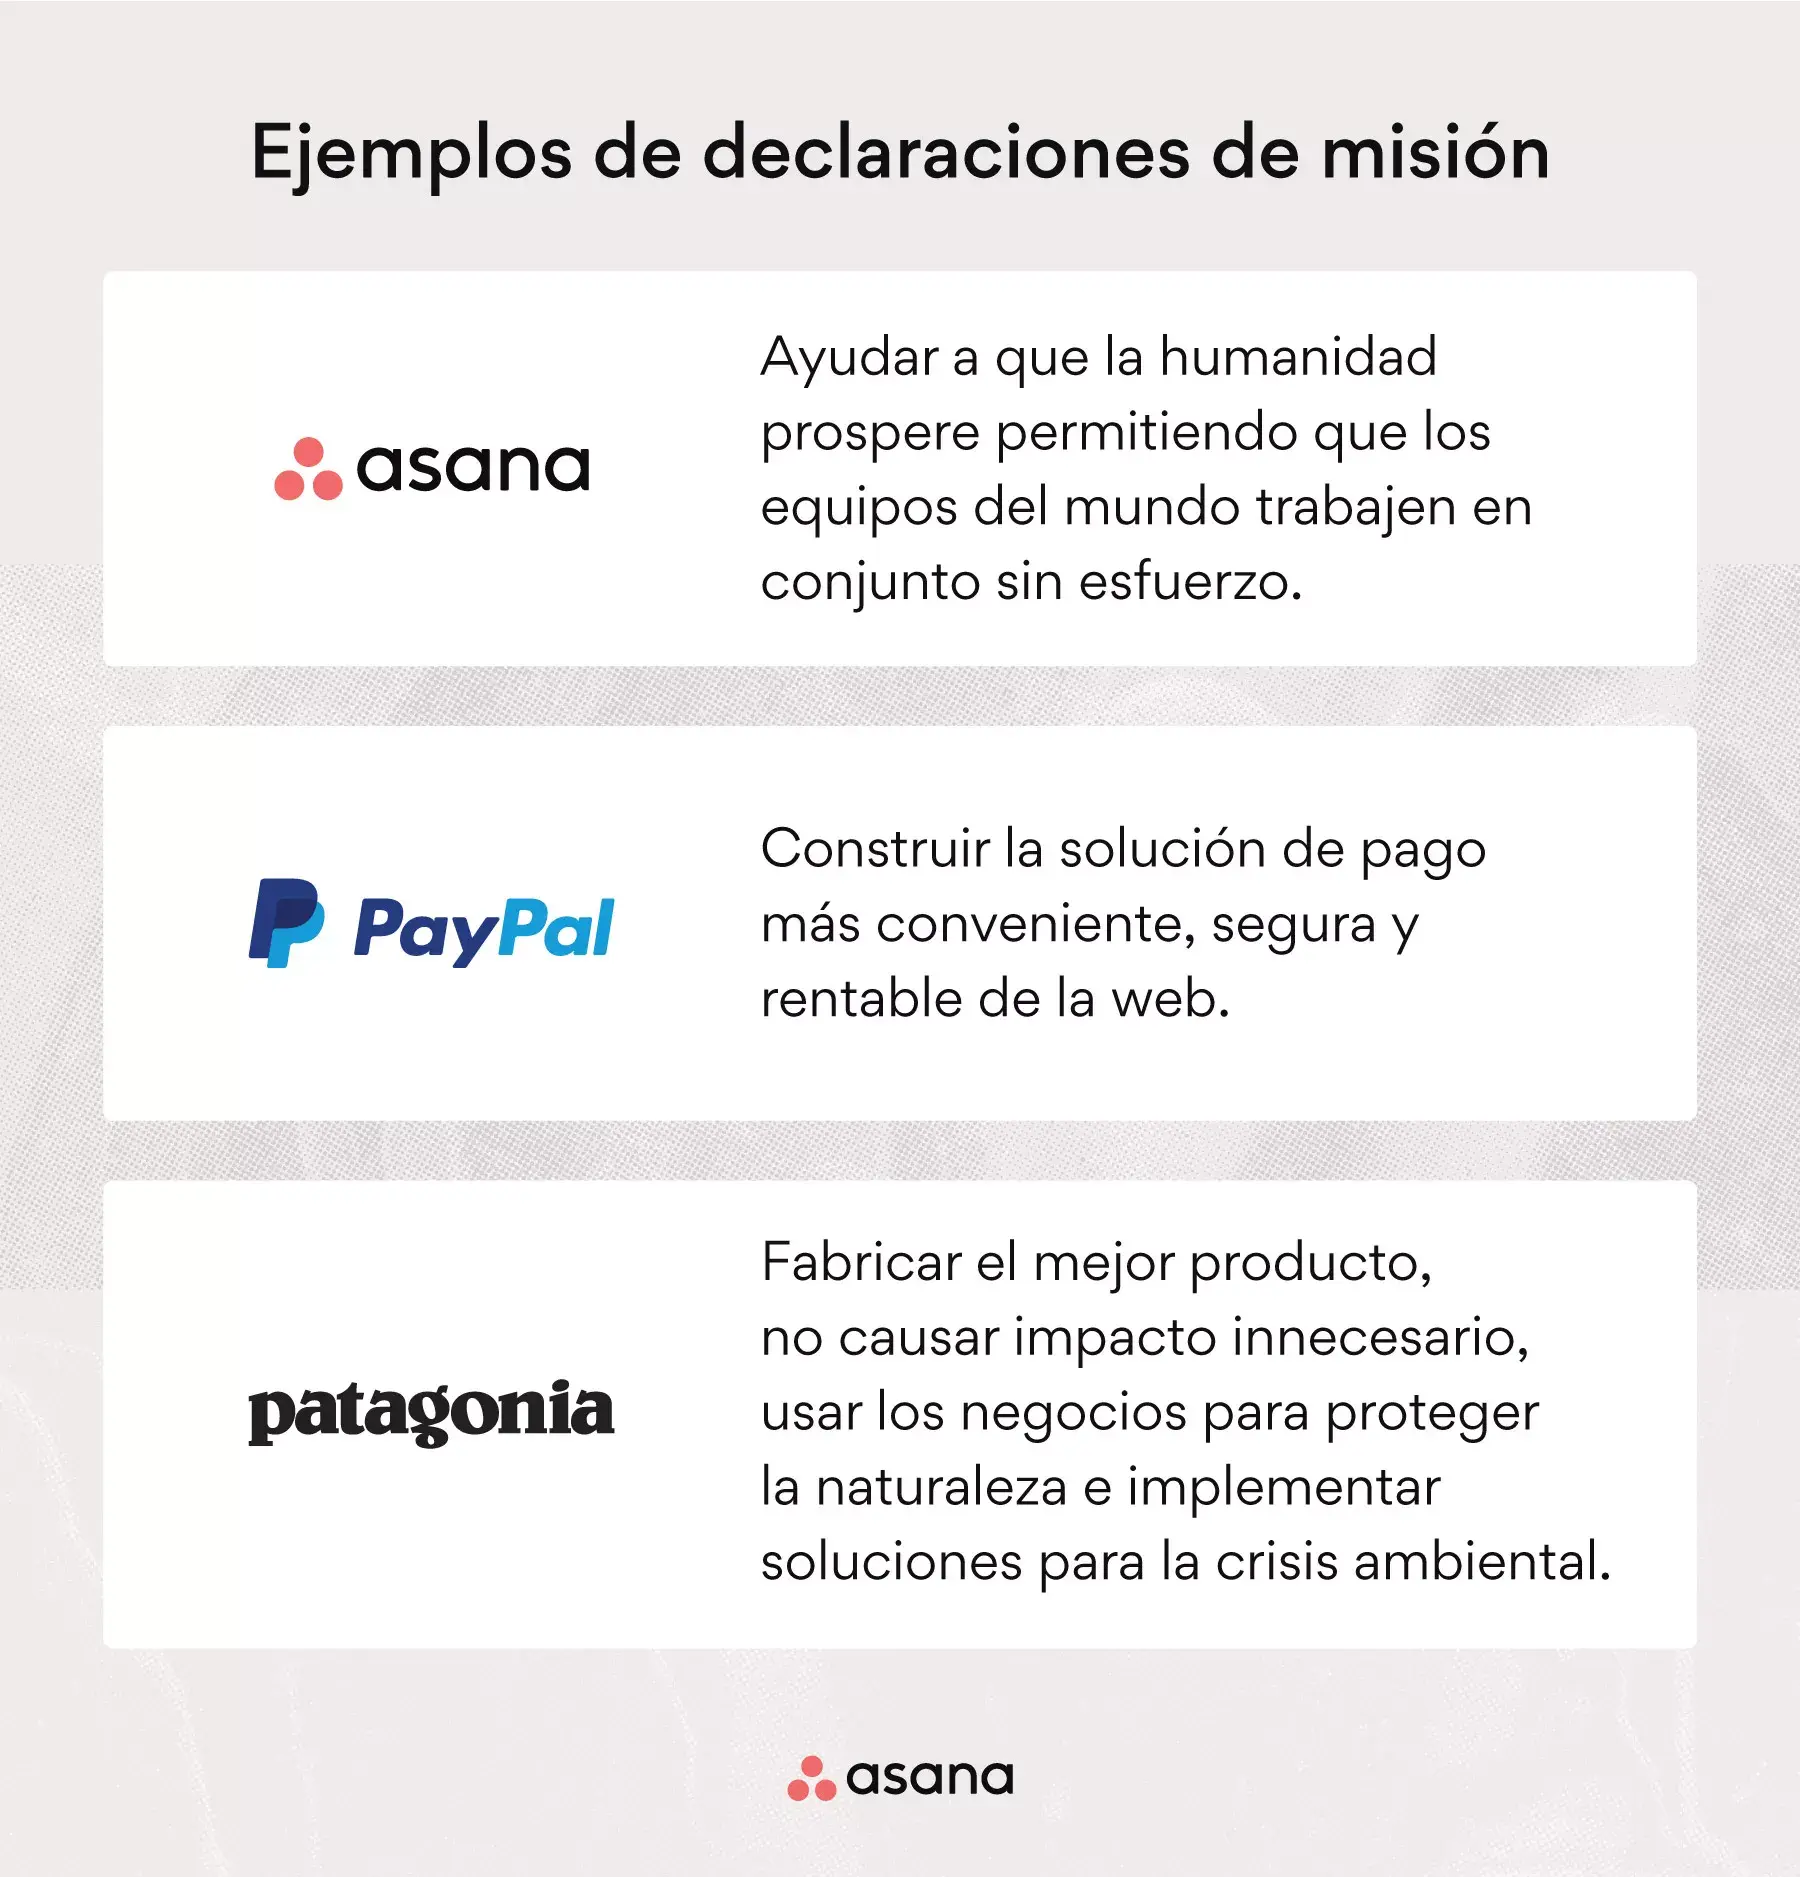 [Ilustración integrada] Ejemplos de declaraciones de misión: Asana, PayPal, Patagonia (ejemplos)